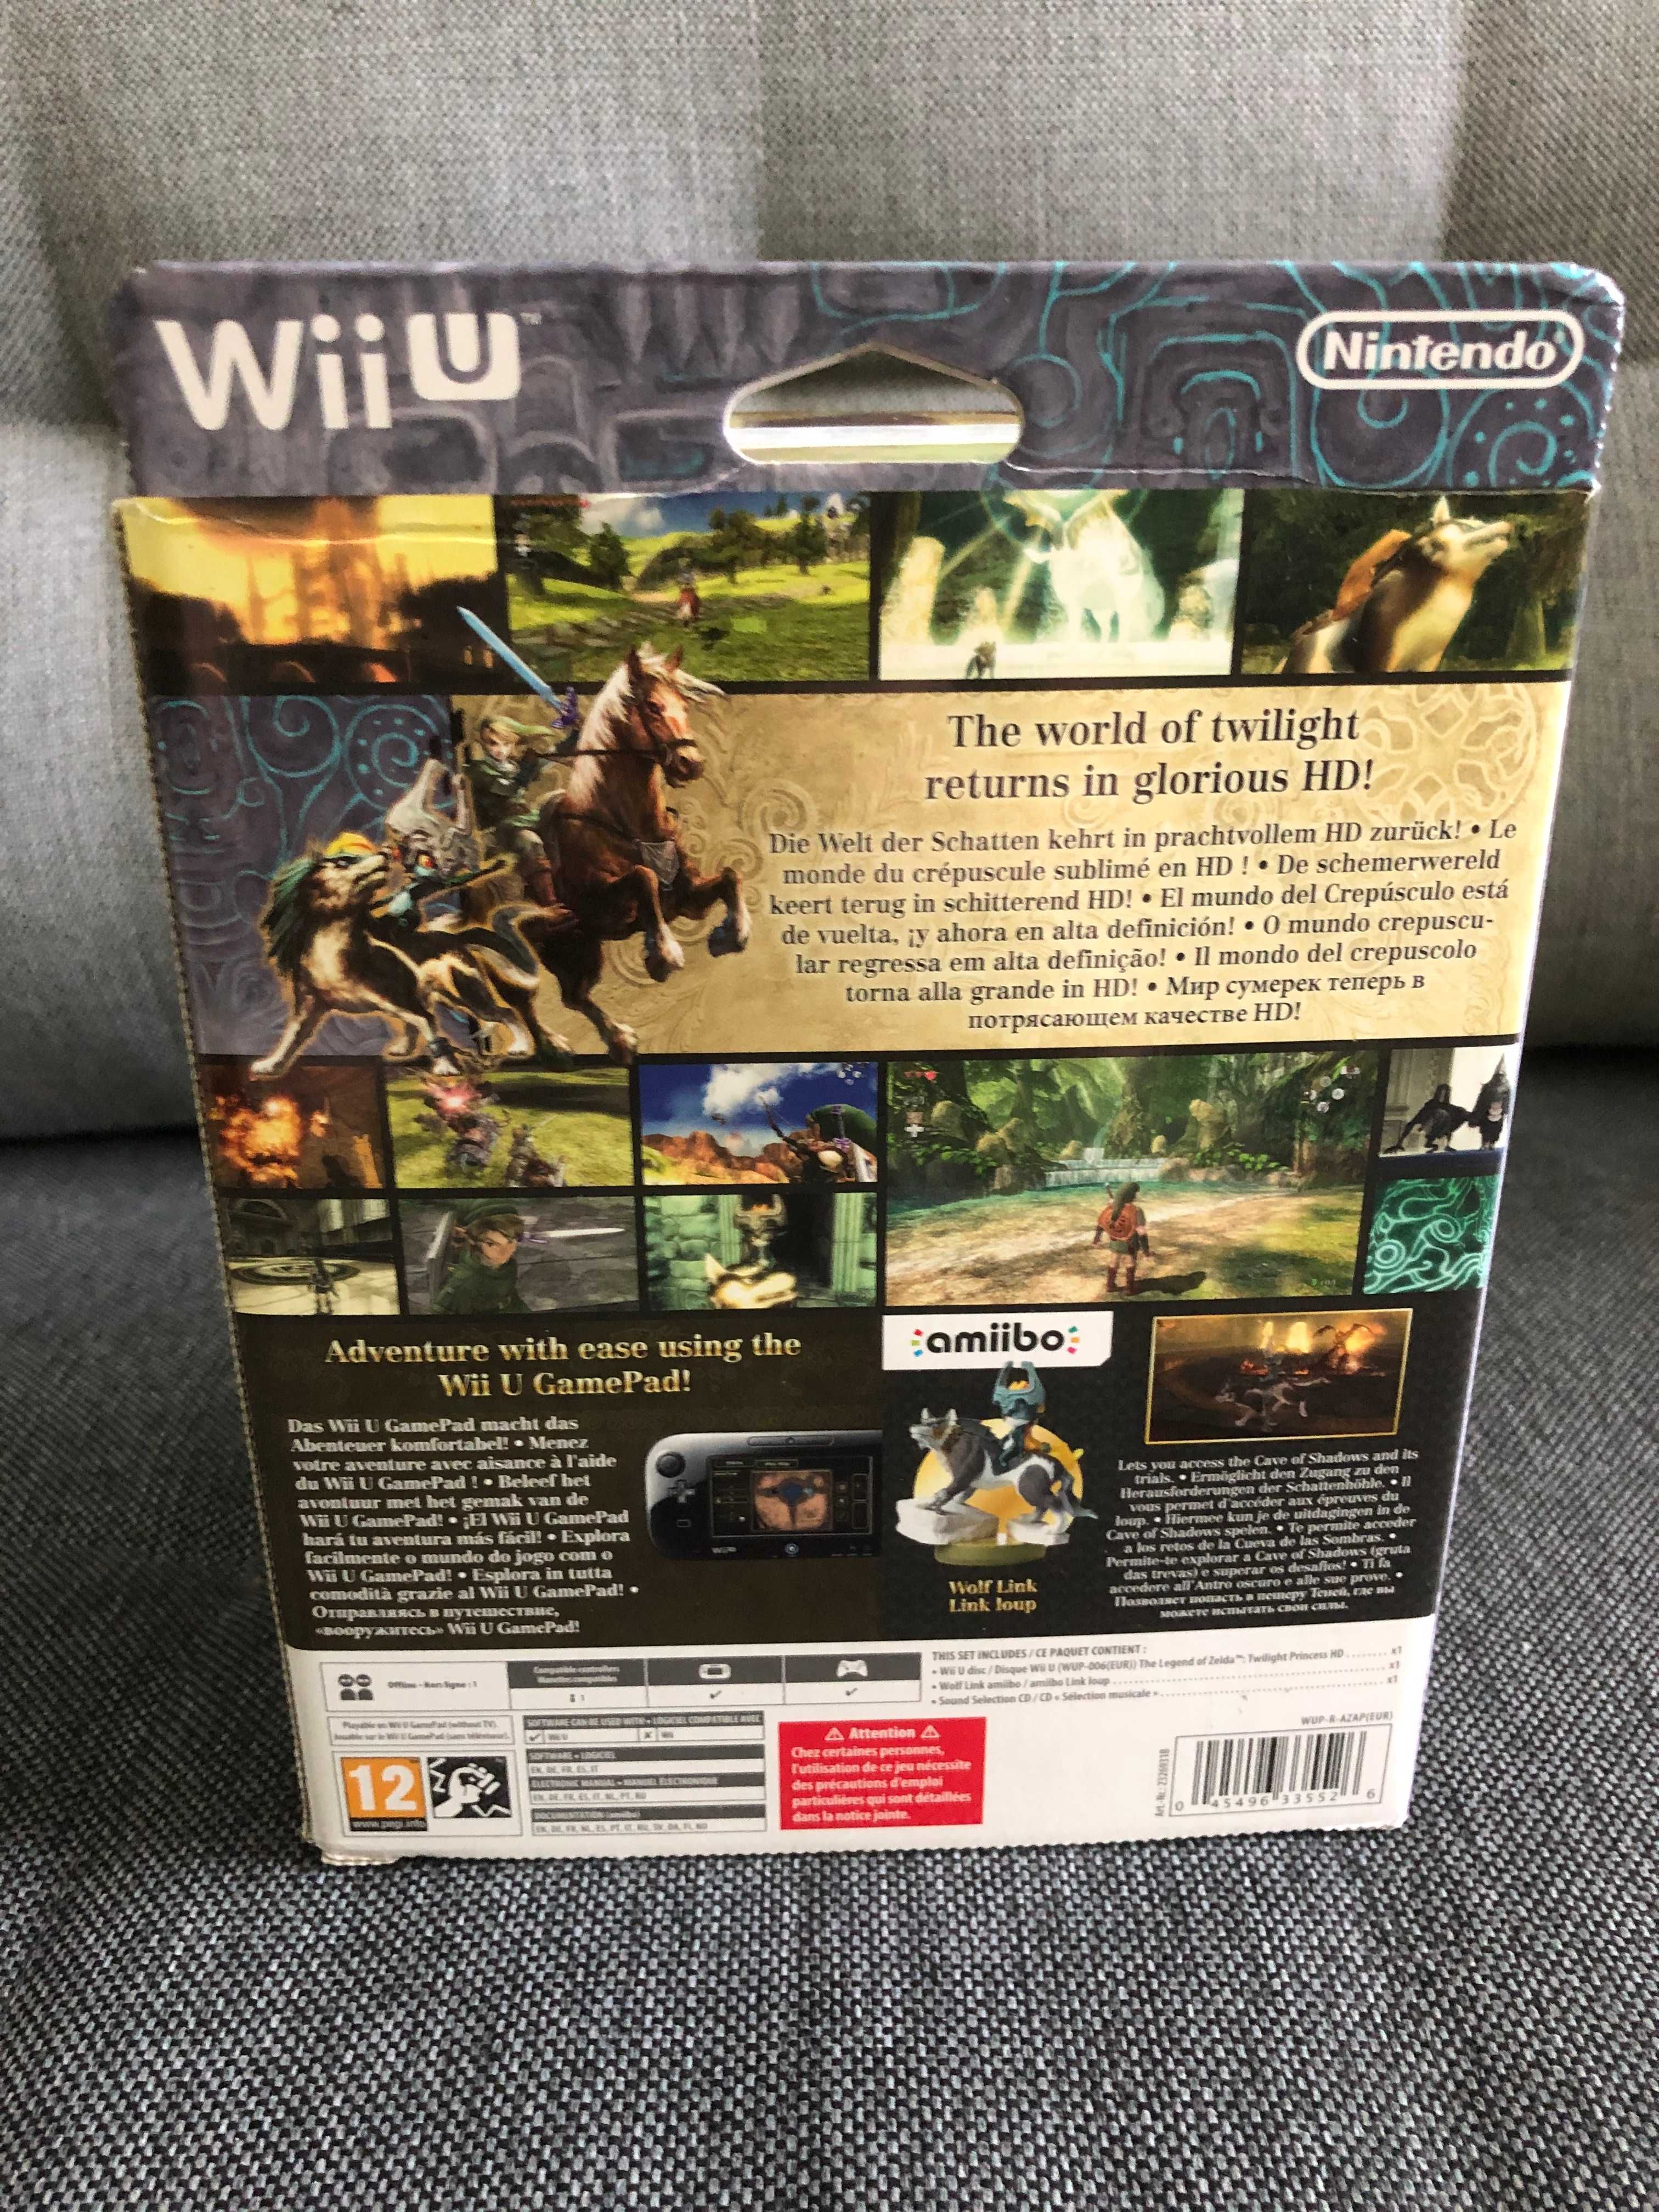 The Legend of Zelda: Twilight Princess HD [Wii U] -stan bdb